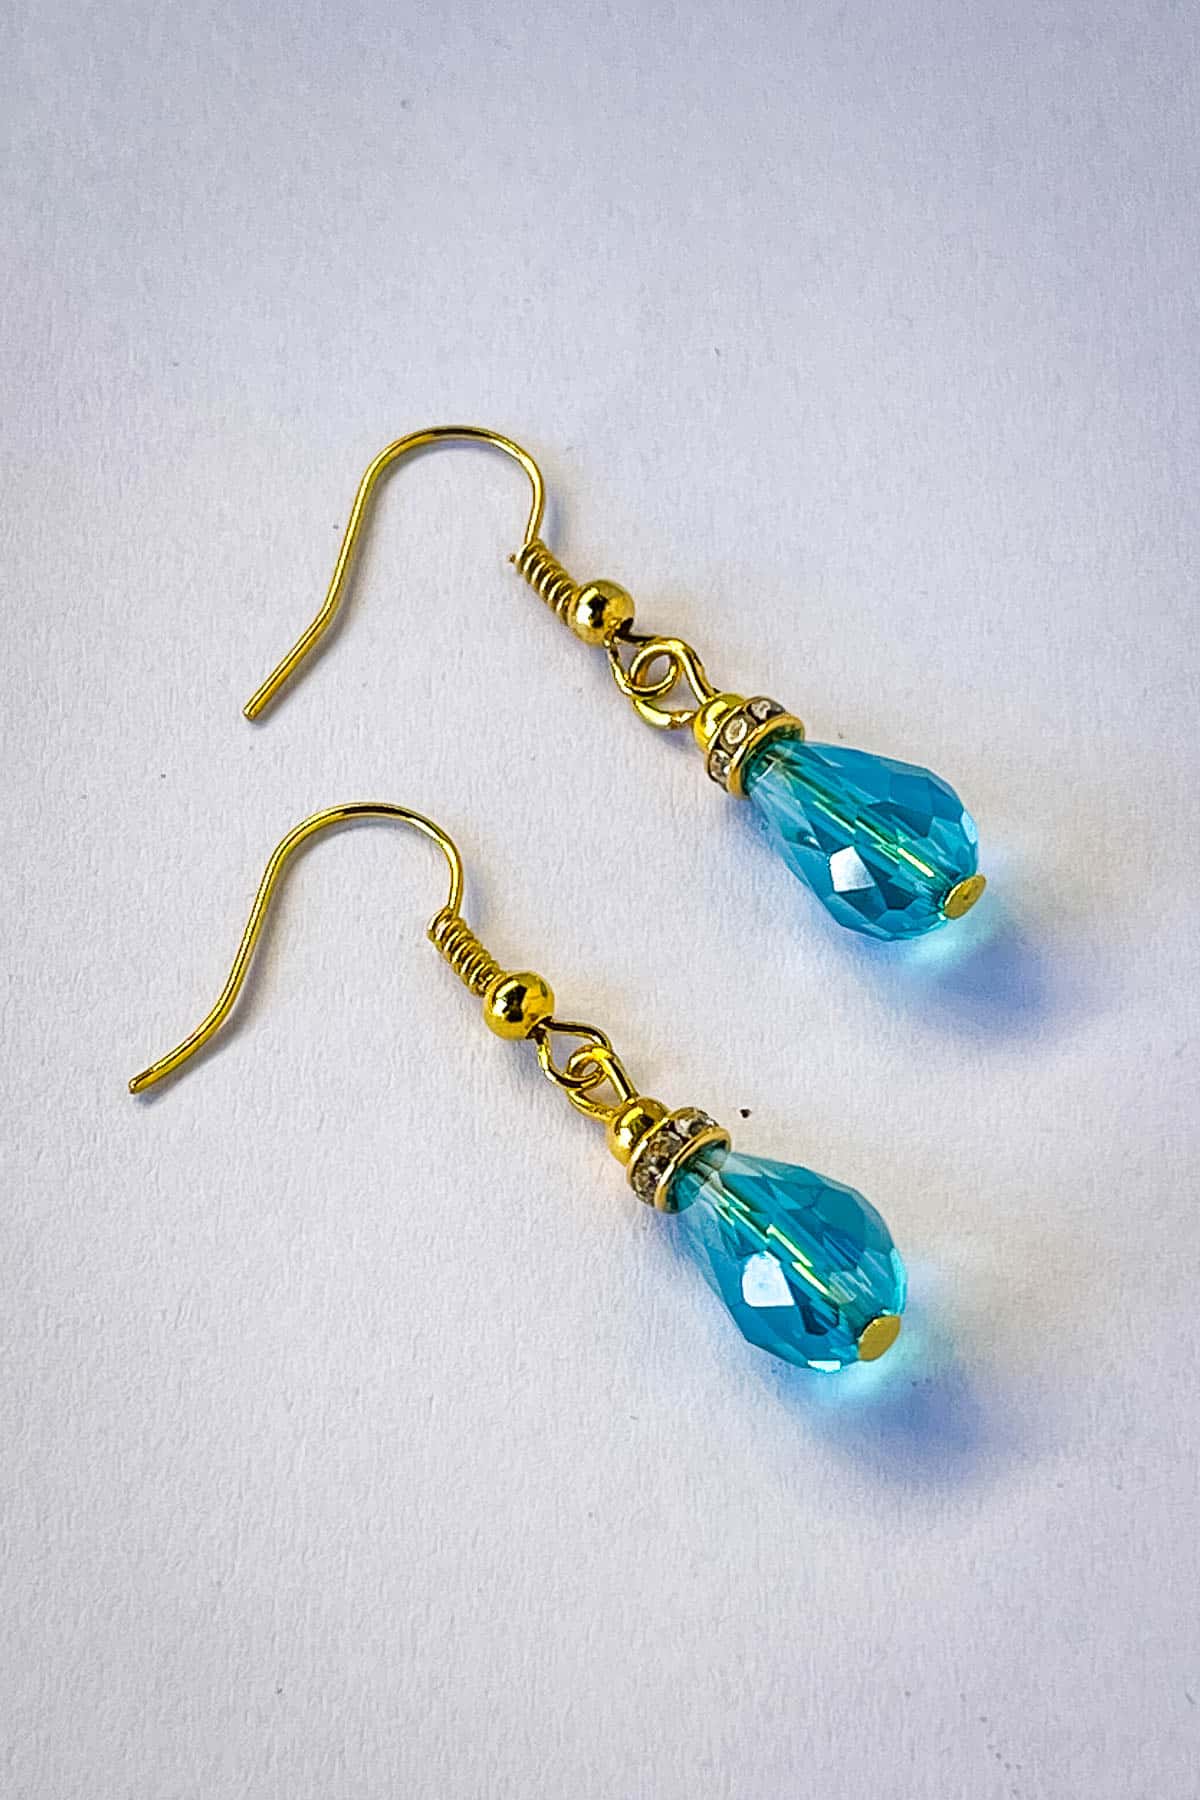 A pair of beaded teardrop earrings.